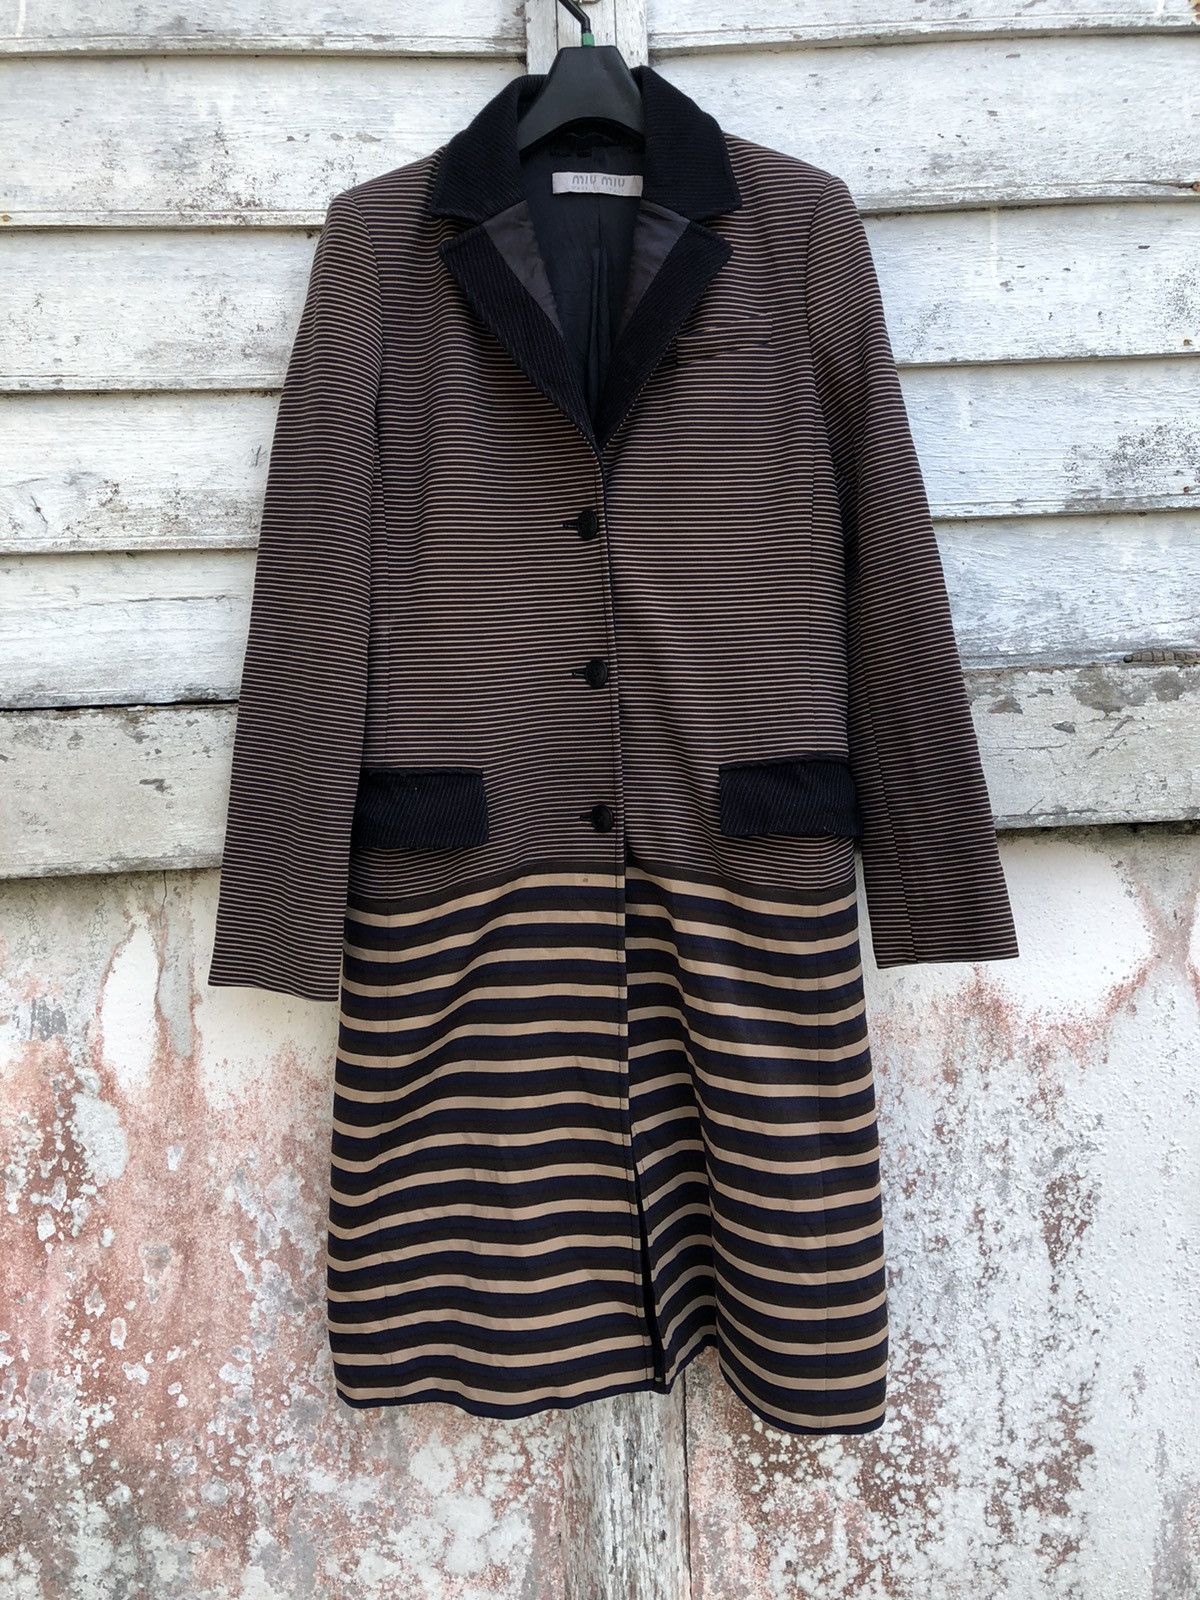 Vintage - Miu Miu Striped Coat - 1